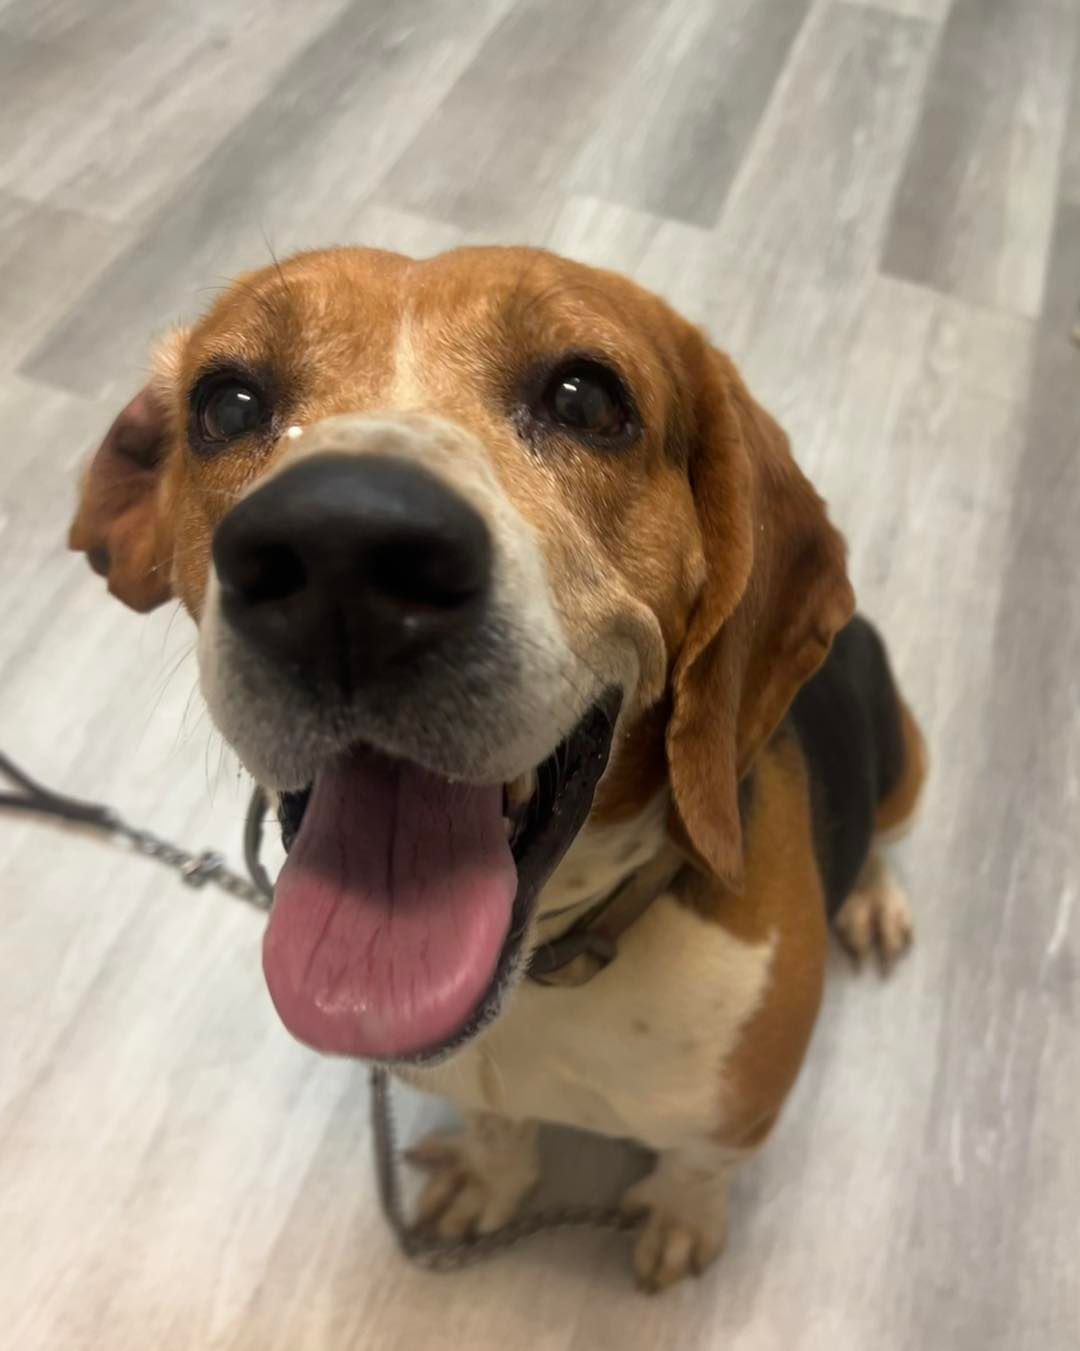 Smiling Beagle dog.